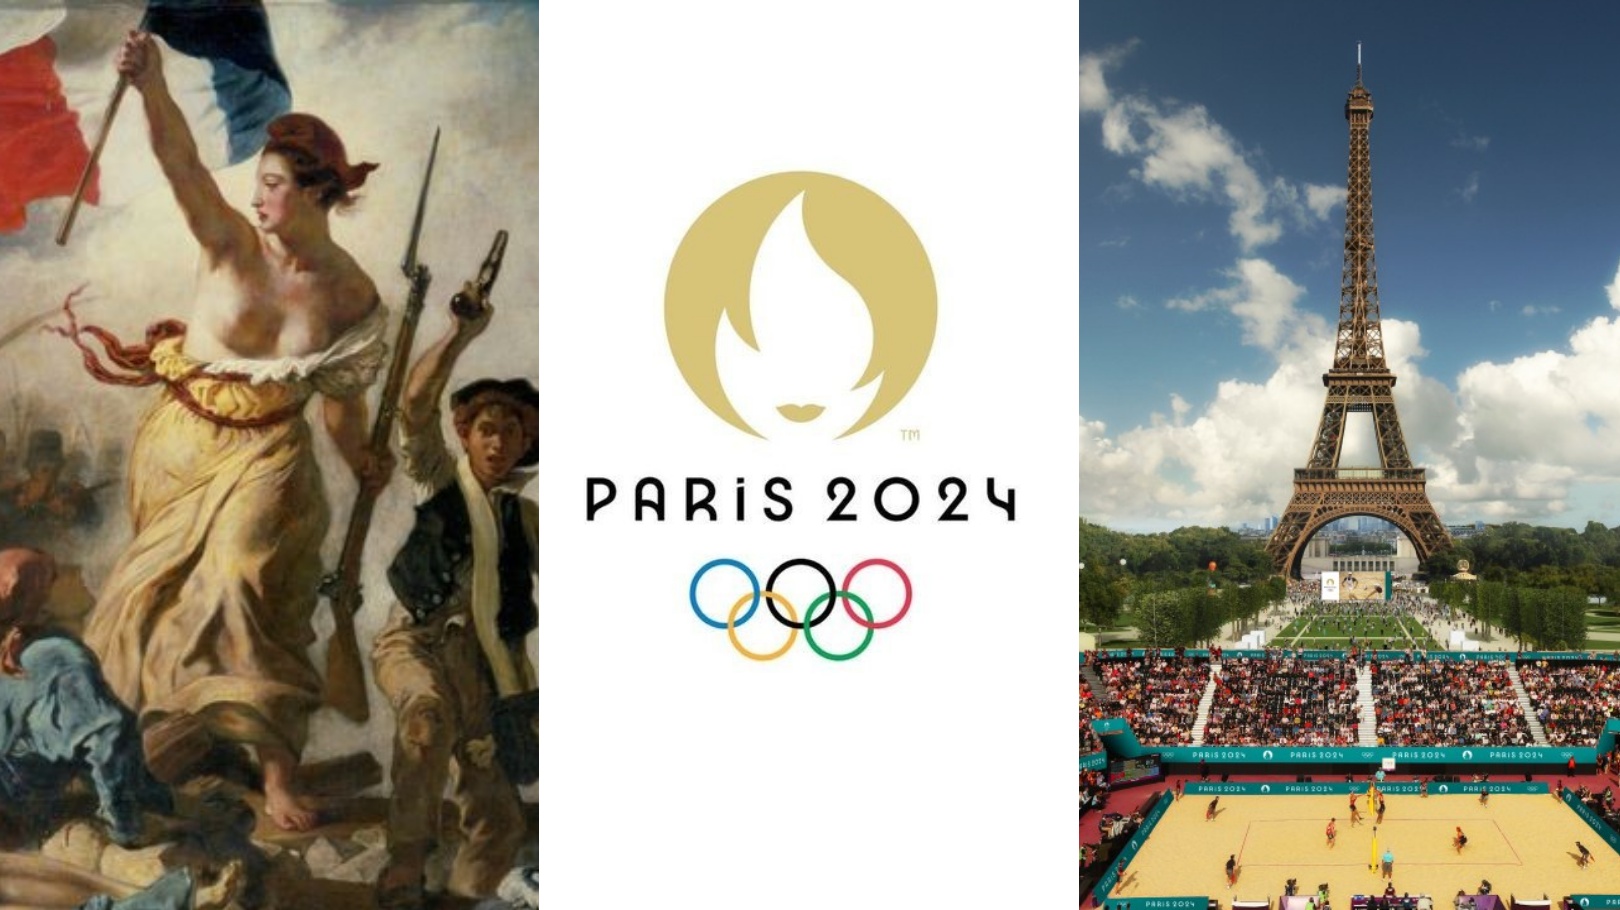 Пасха во франции в 2024. Символ олимпиады 2024 в Париже. Париж 2024 символ. Эмблема Олимпийских игр в Париже 2024.